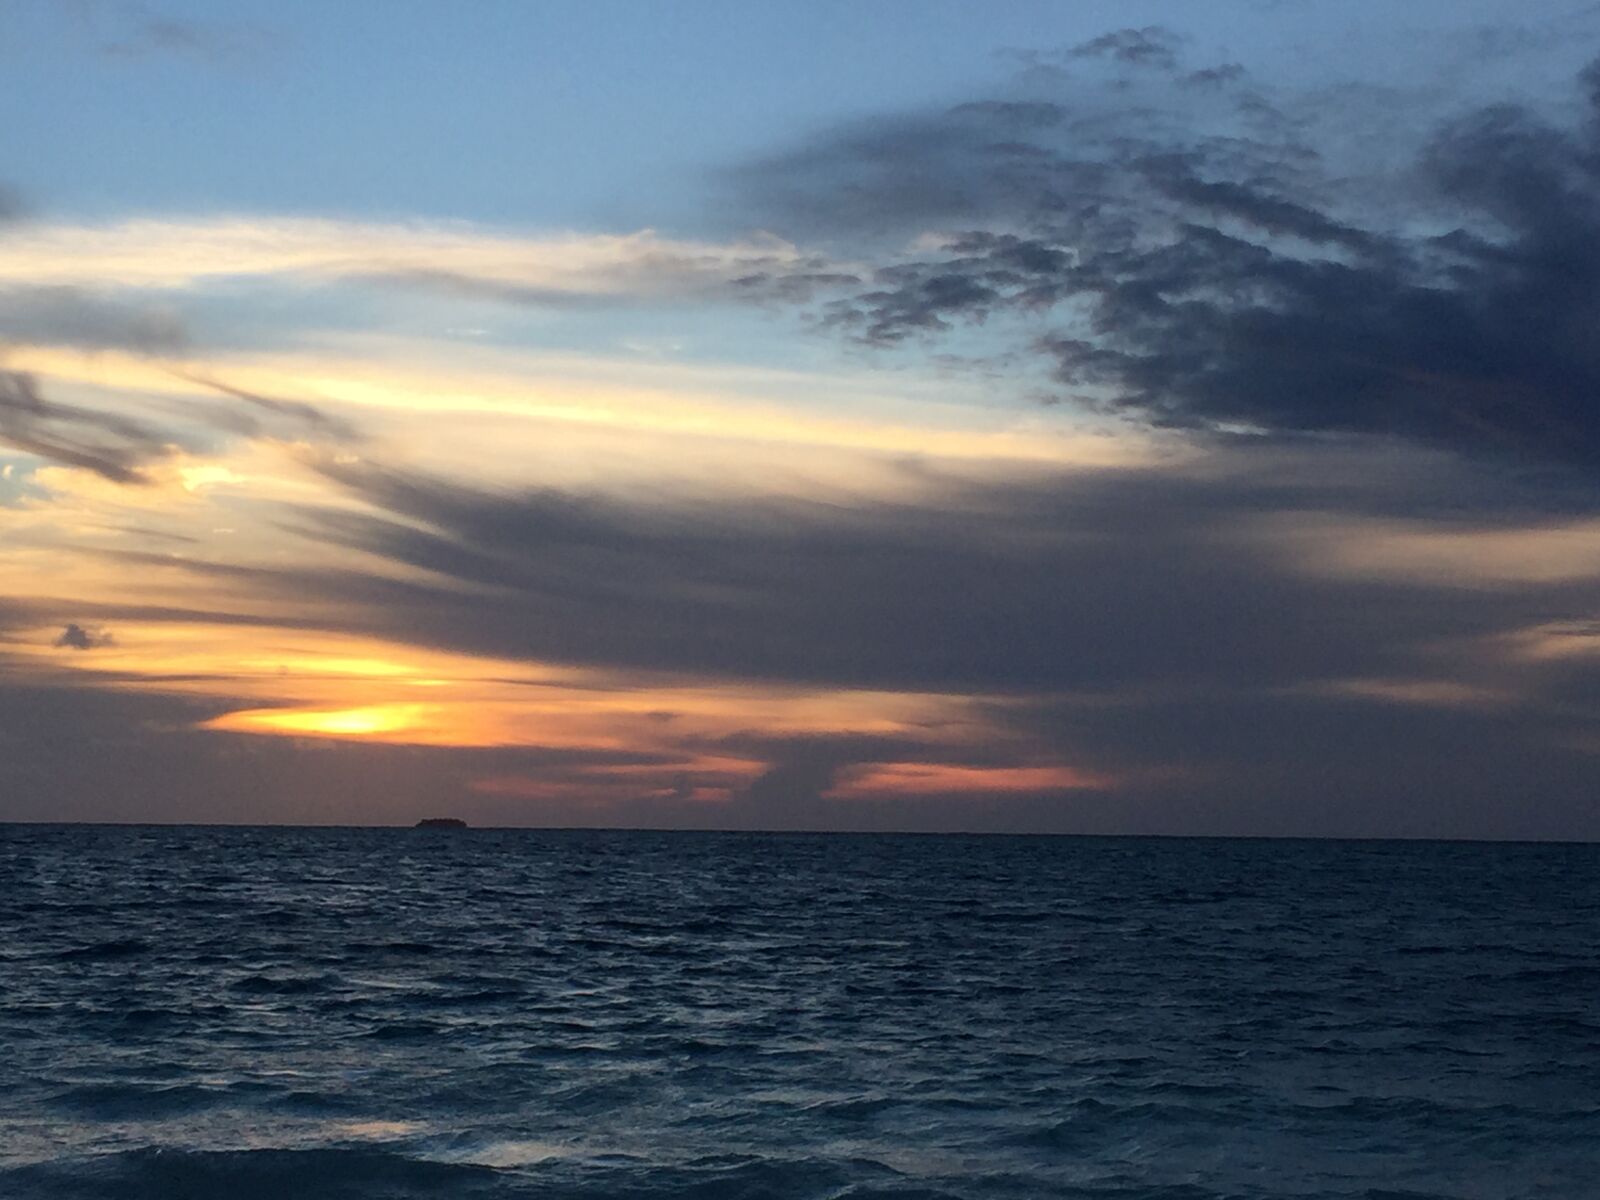 Apple iPhone 6 sample photo. Maldives, sunset photography